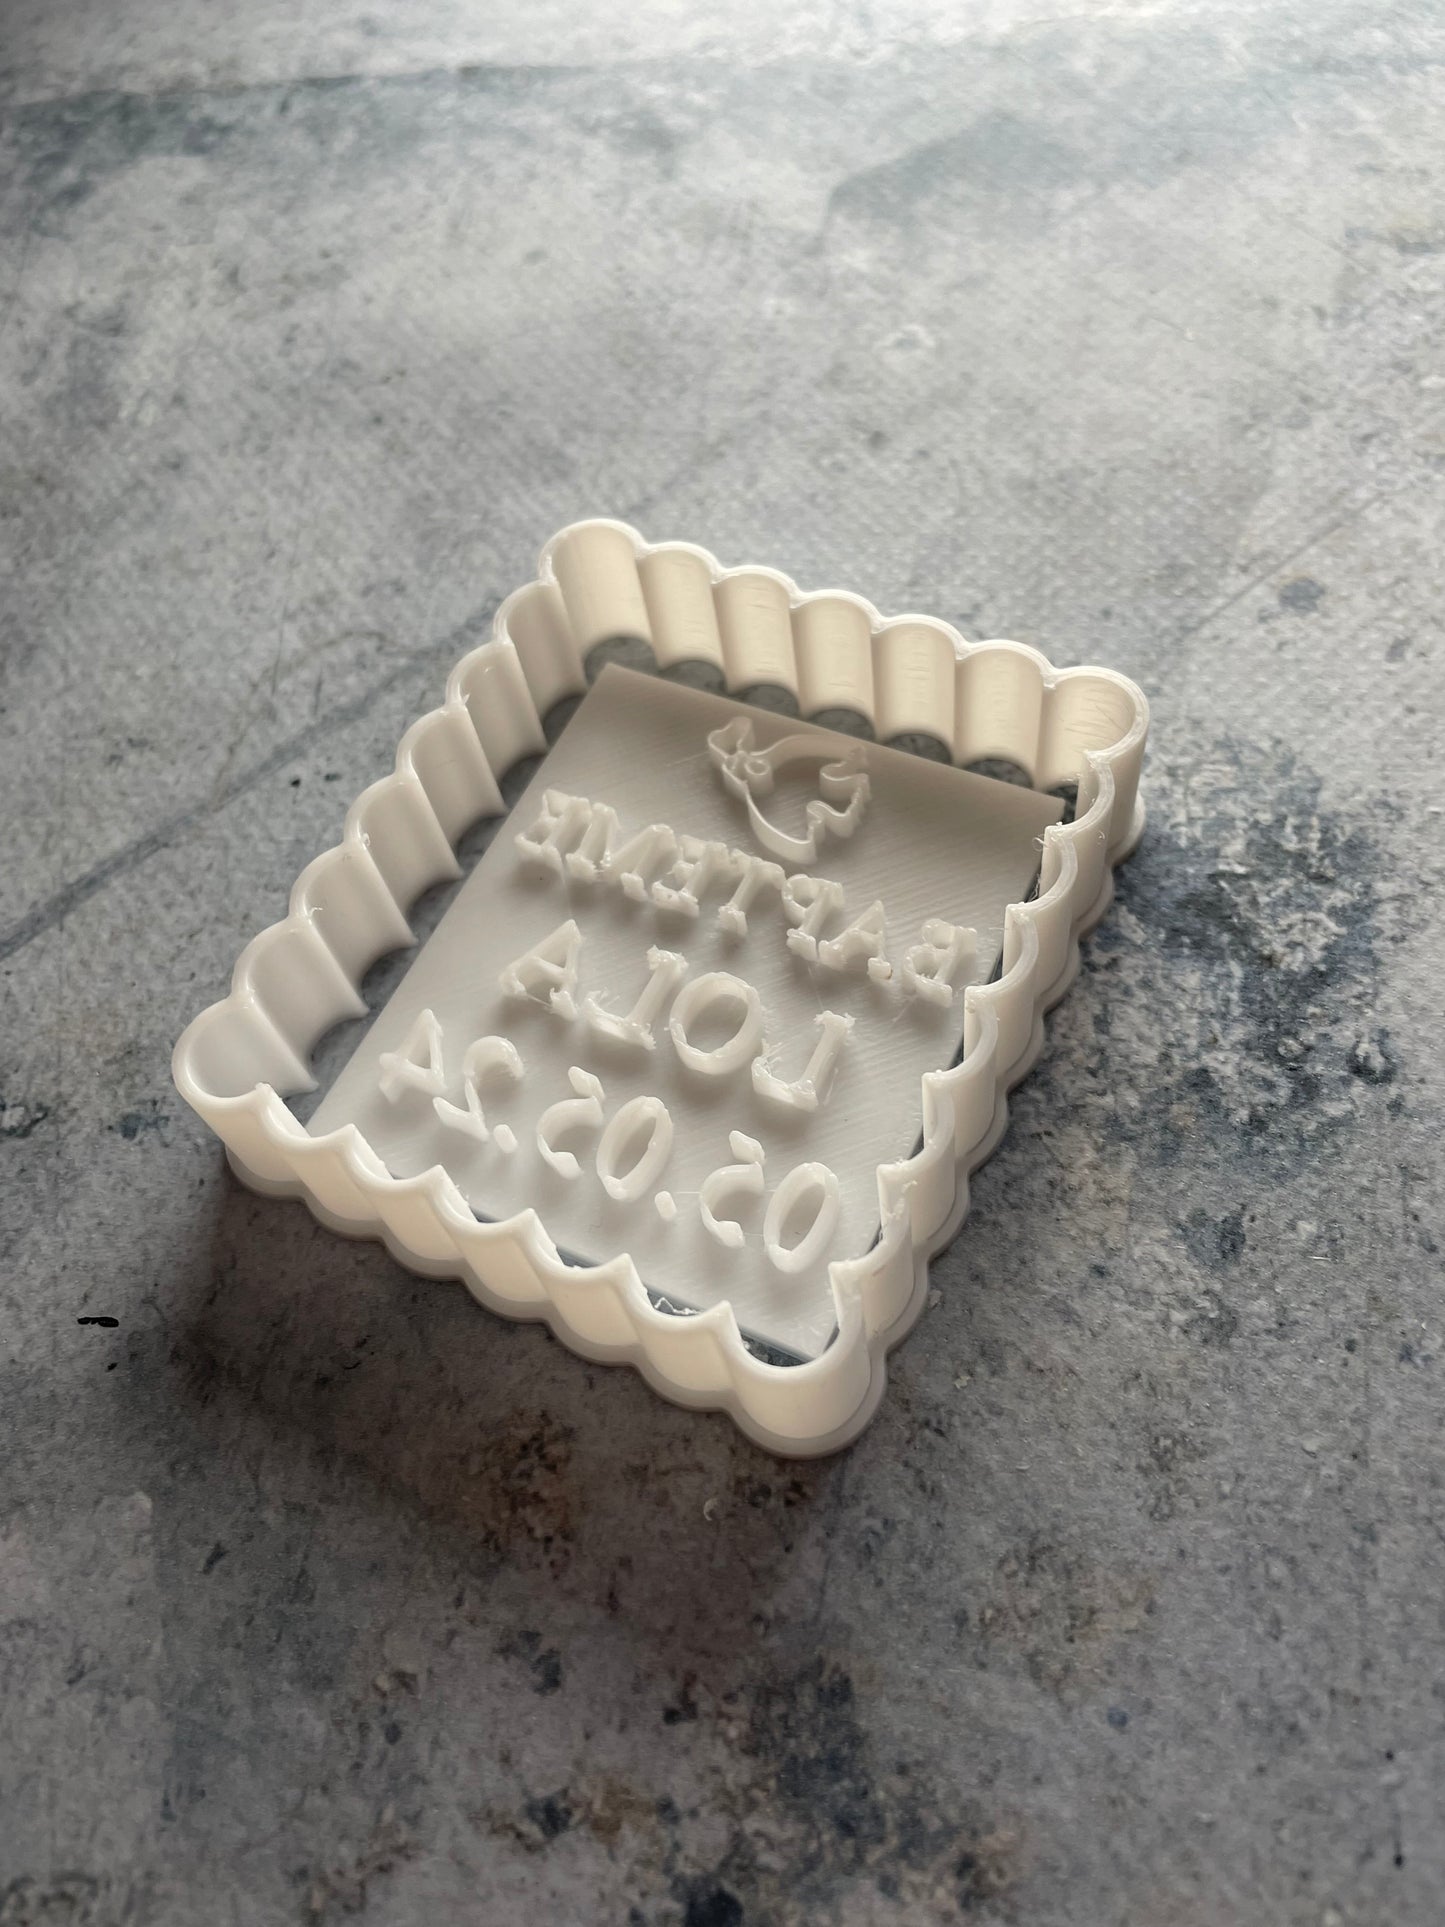 Emporte-pièce - Bapteme à personnaliser - pâte à sucre, pâte à modeler-Décoration gâteau-Fait maison-France 3D